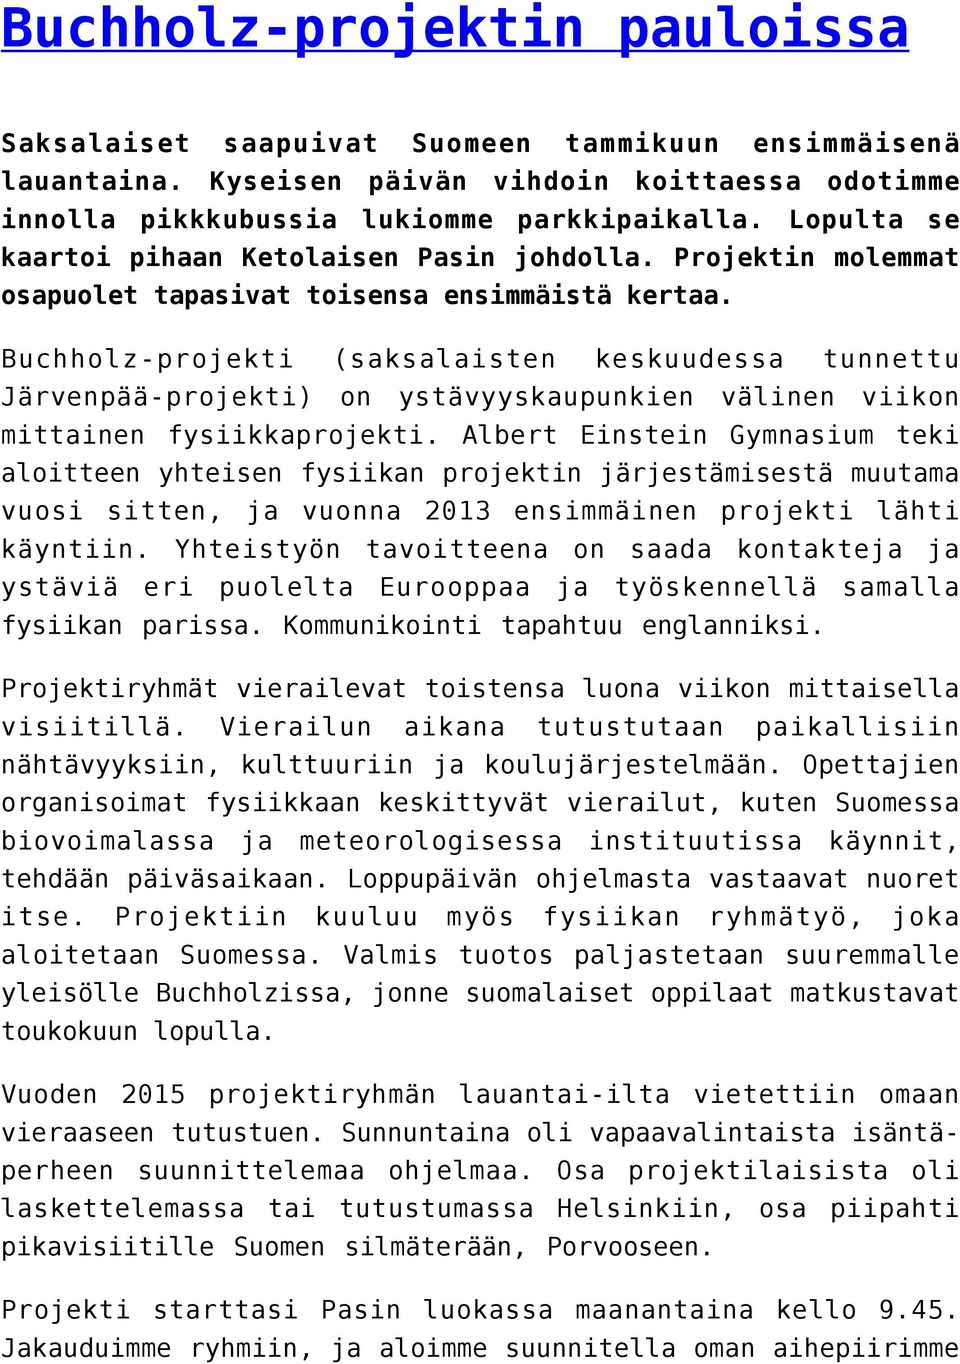 Buchholz-projekti (saksalaisten keskuudessa tunnettu Järvenpää-projekti) on ystävyyskaupunkien välinen viikon mittainen fysiikkaprojekti.